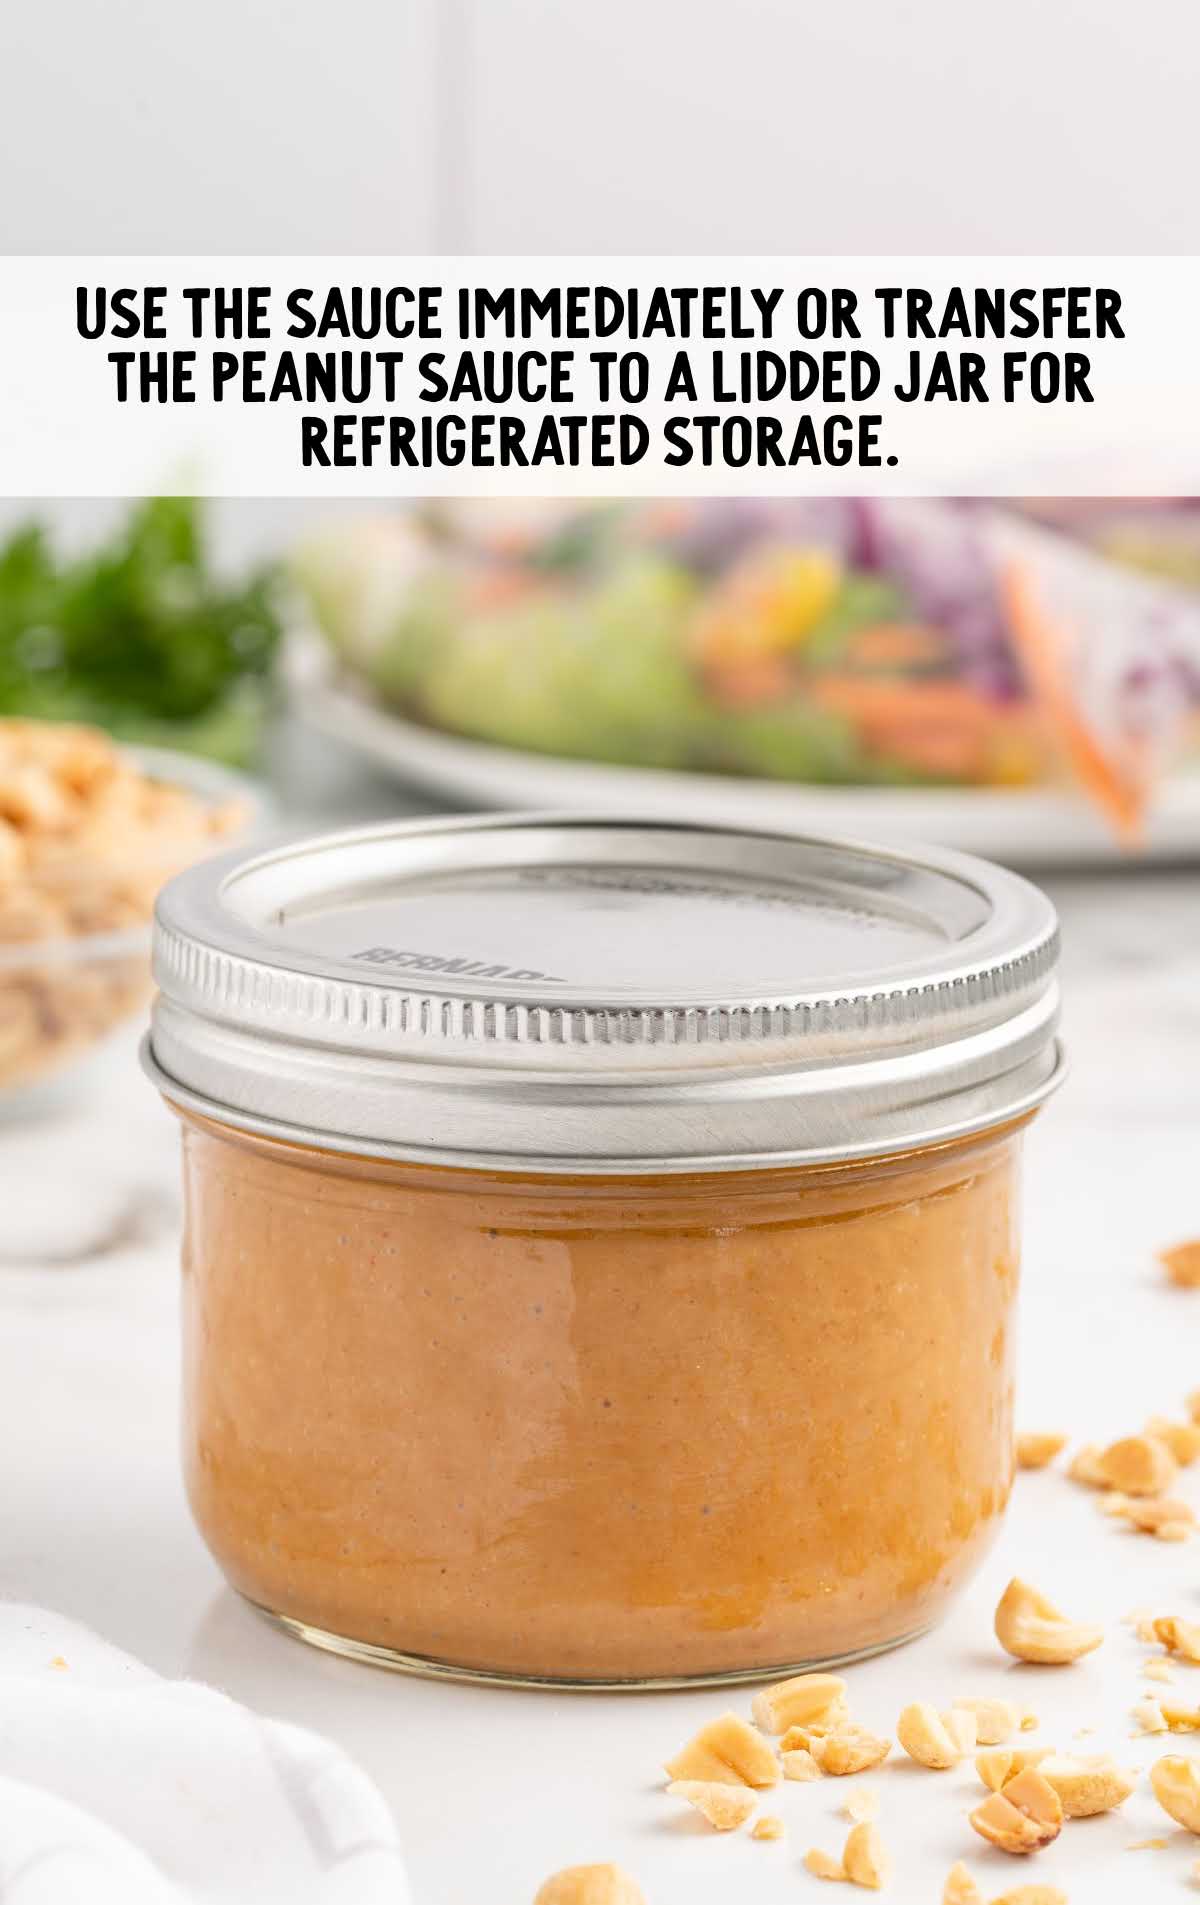 transfer peanut sauce jar to the refrigerator